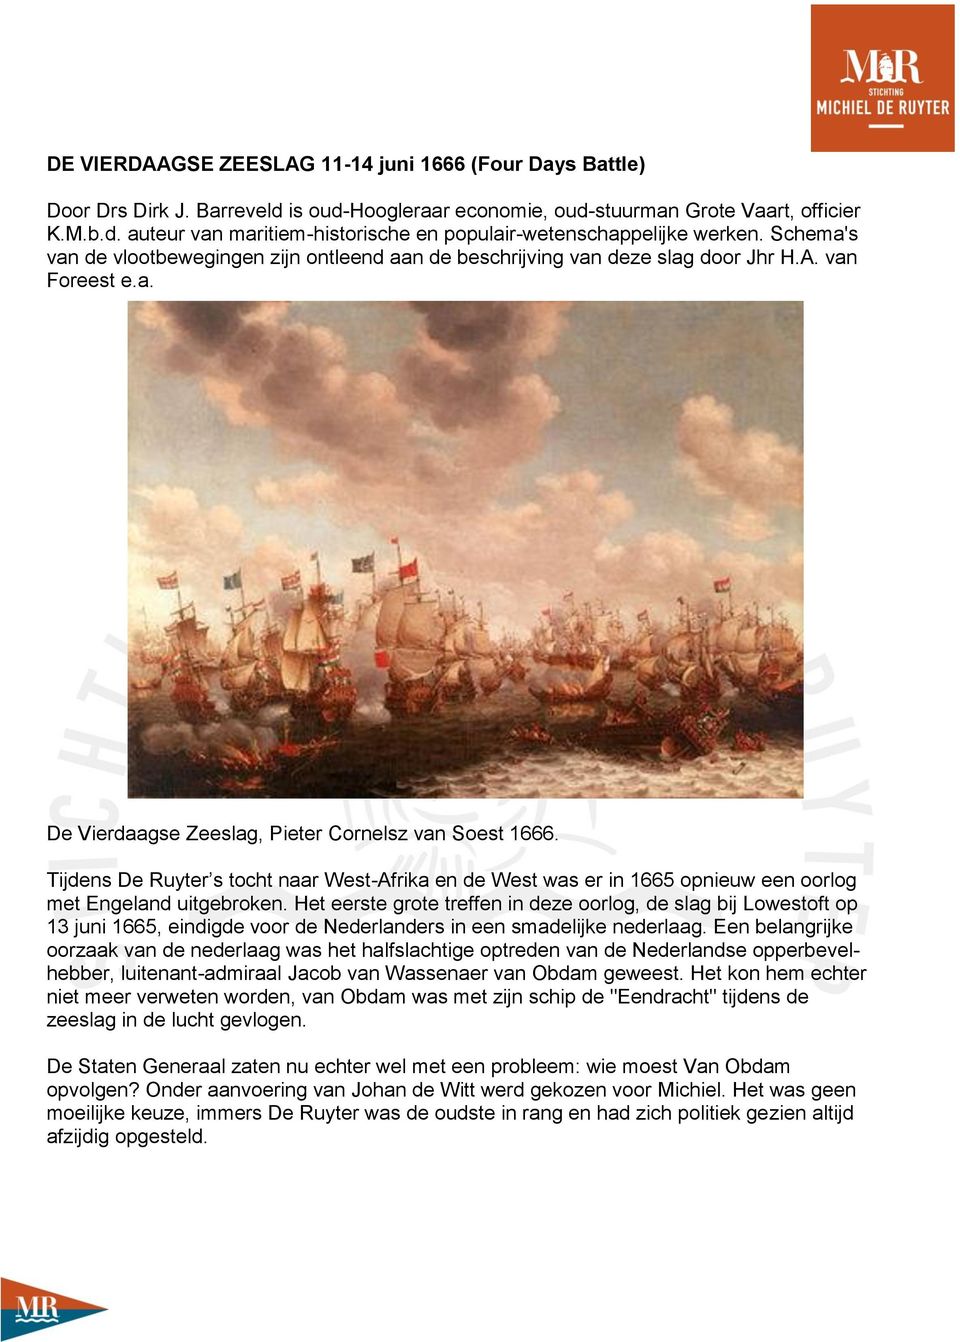 Tijdens De Ruyter s tocht naar West-Afrika en de West was er in 1665 opnieuw een oorlog met Engeland uitgebroken.